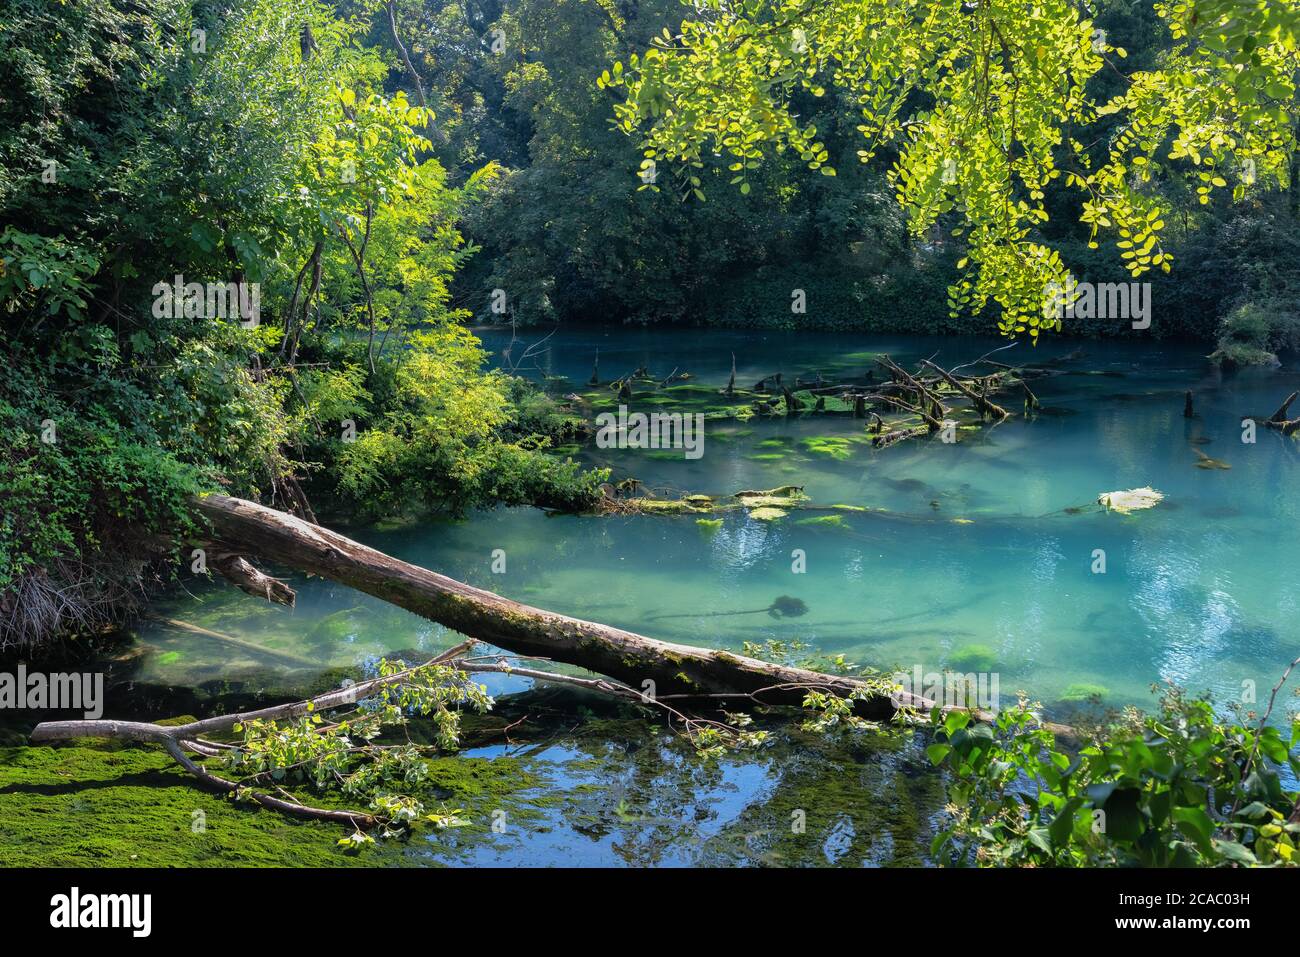 View of Timavo river spring. Nature area close to Trieste city, Friuli Venezia Giulia region, Italy. Stock Photo